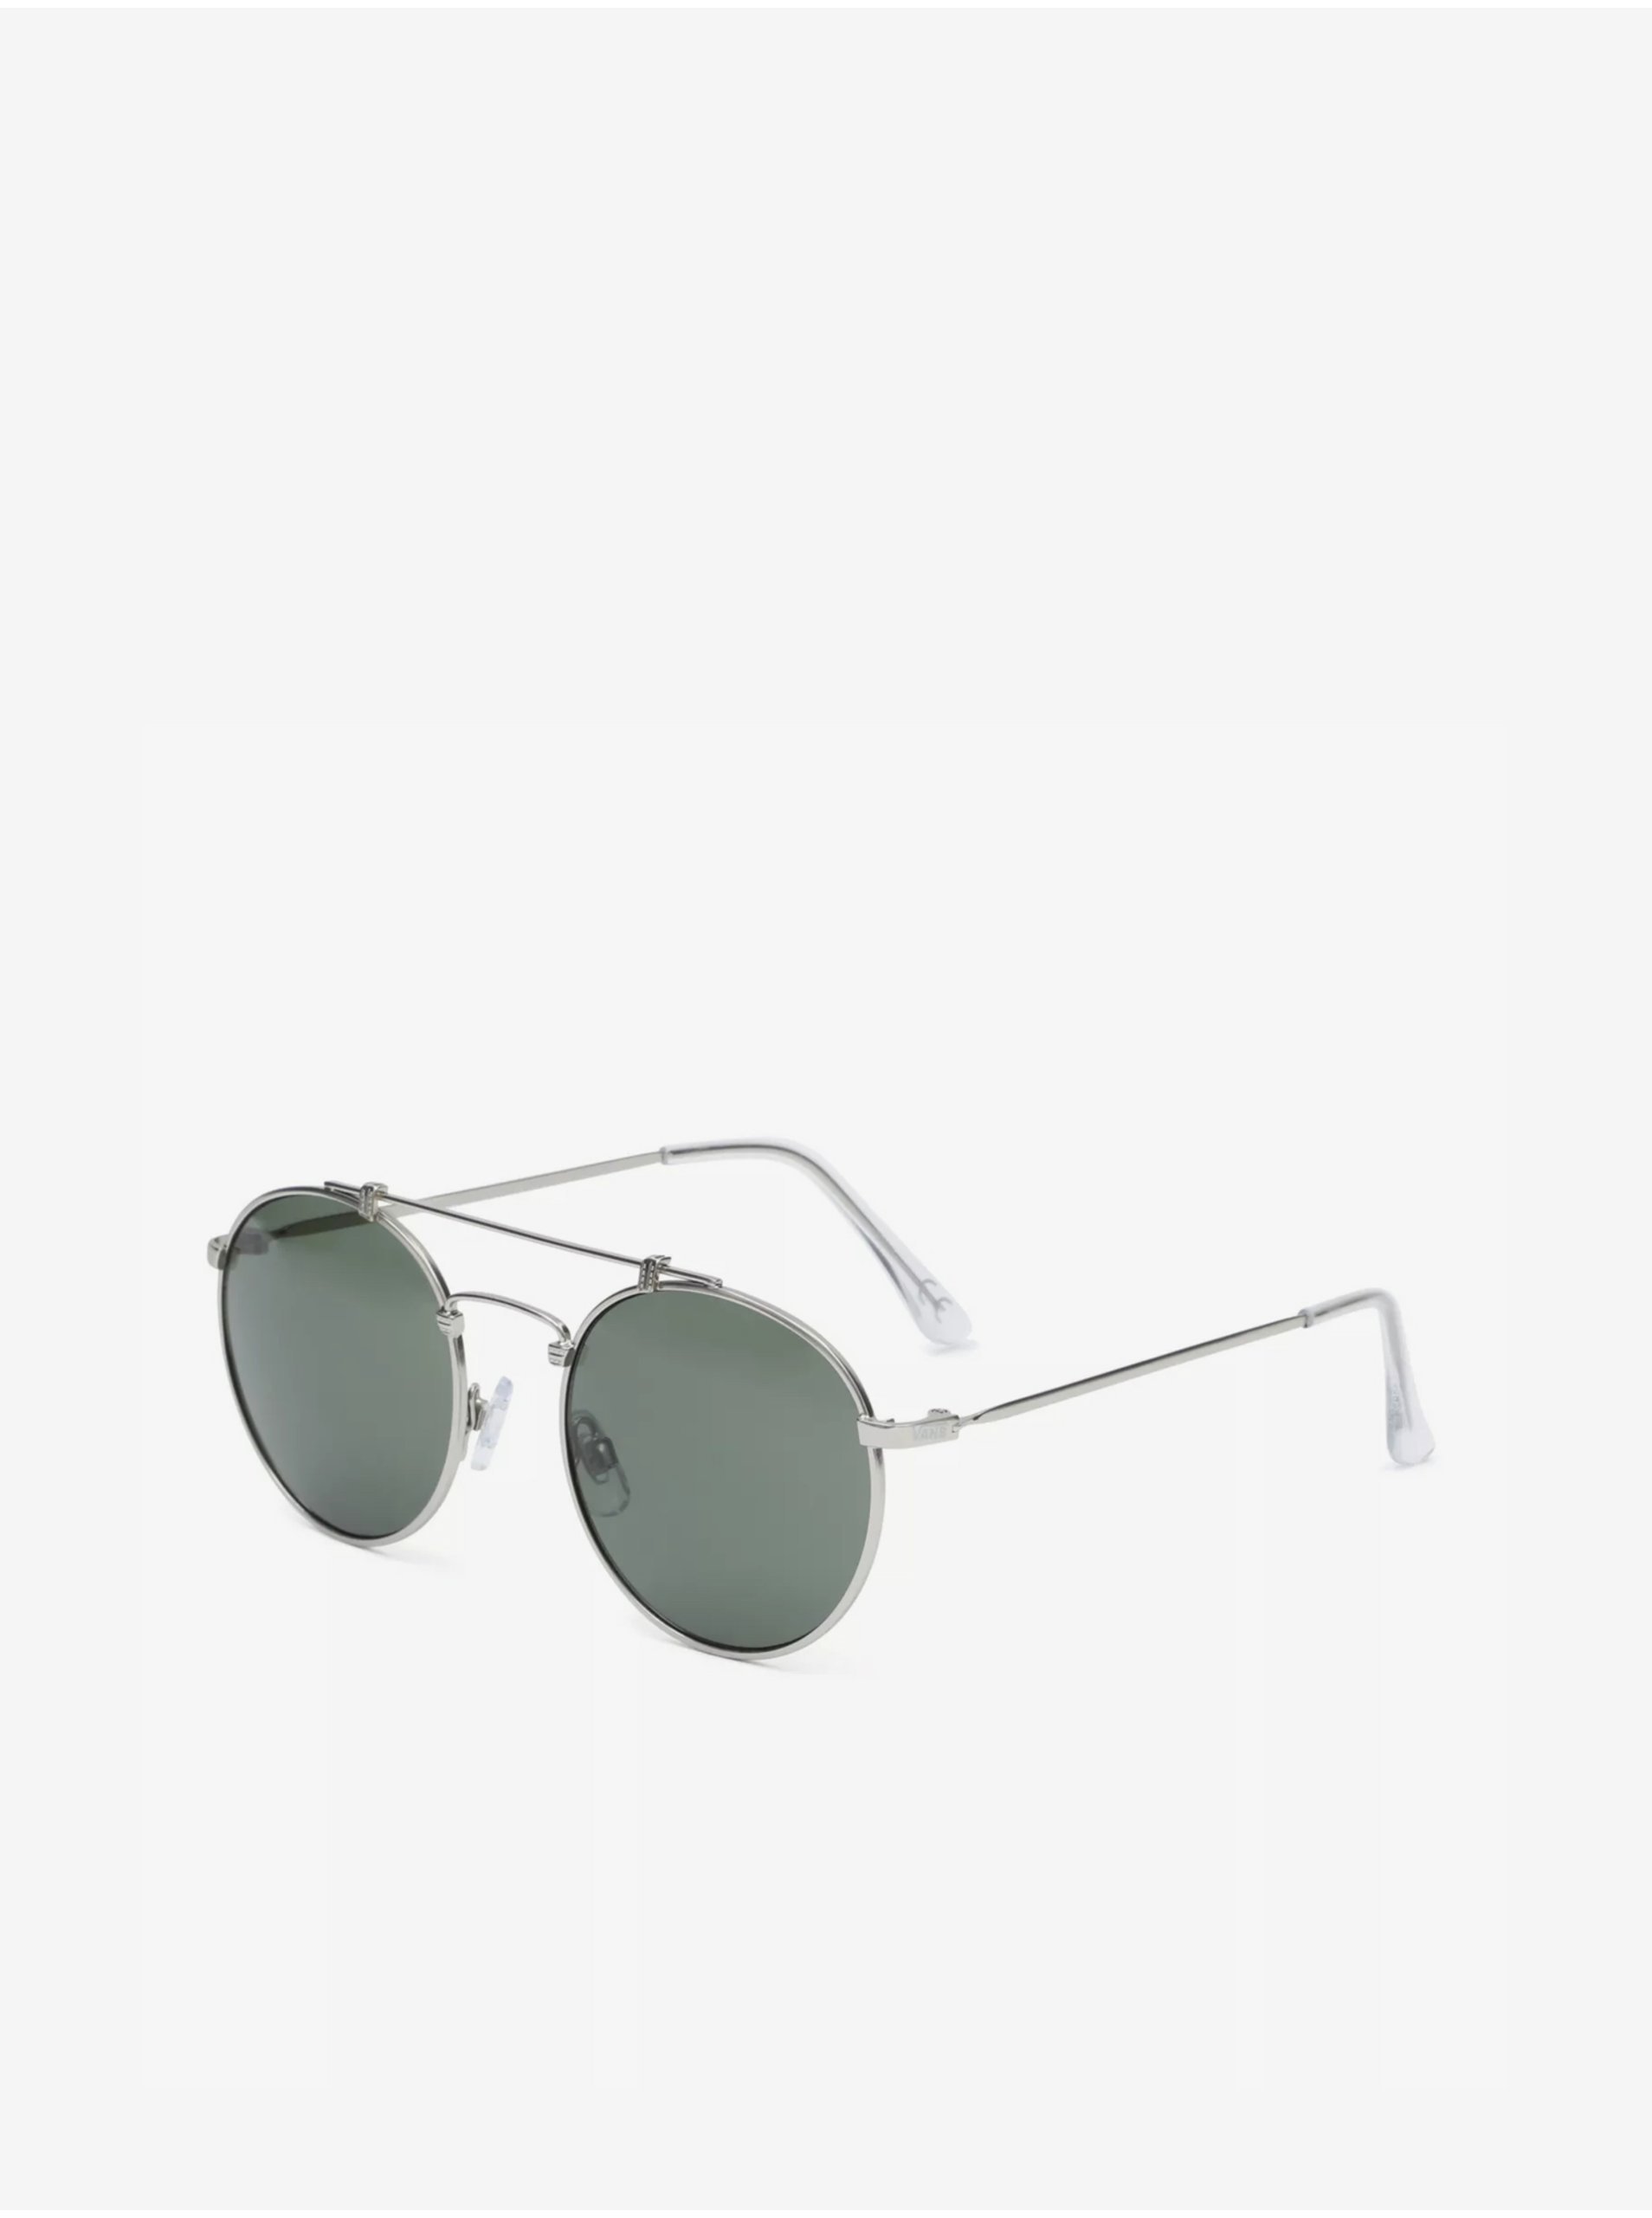 Men's Sunglasses Vans Henderson